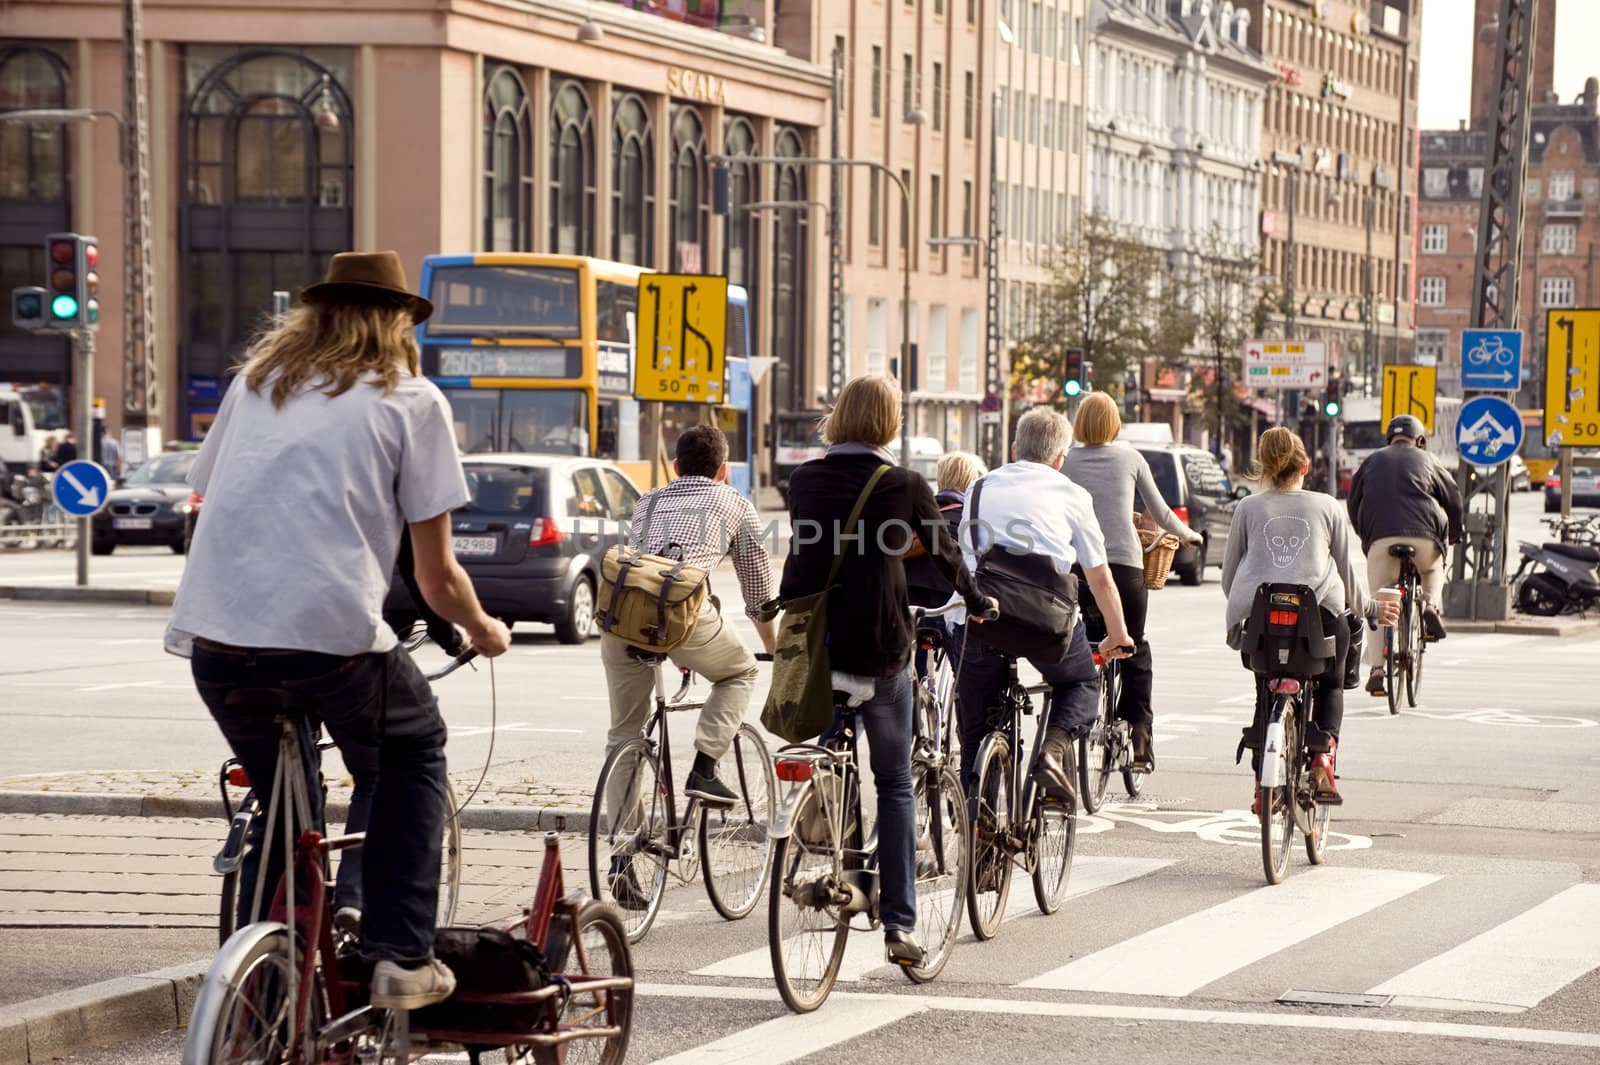 Bicyclists in the street Copenhagen, Denmark, September 2011